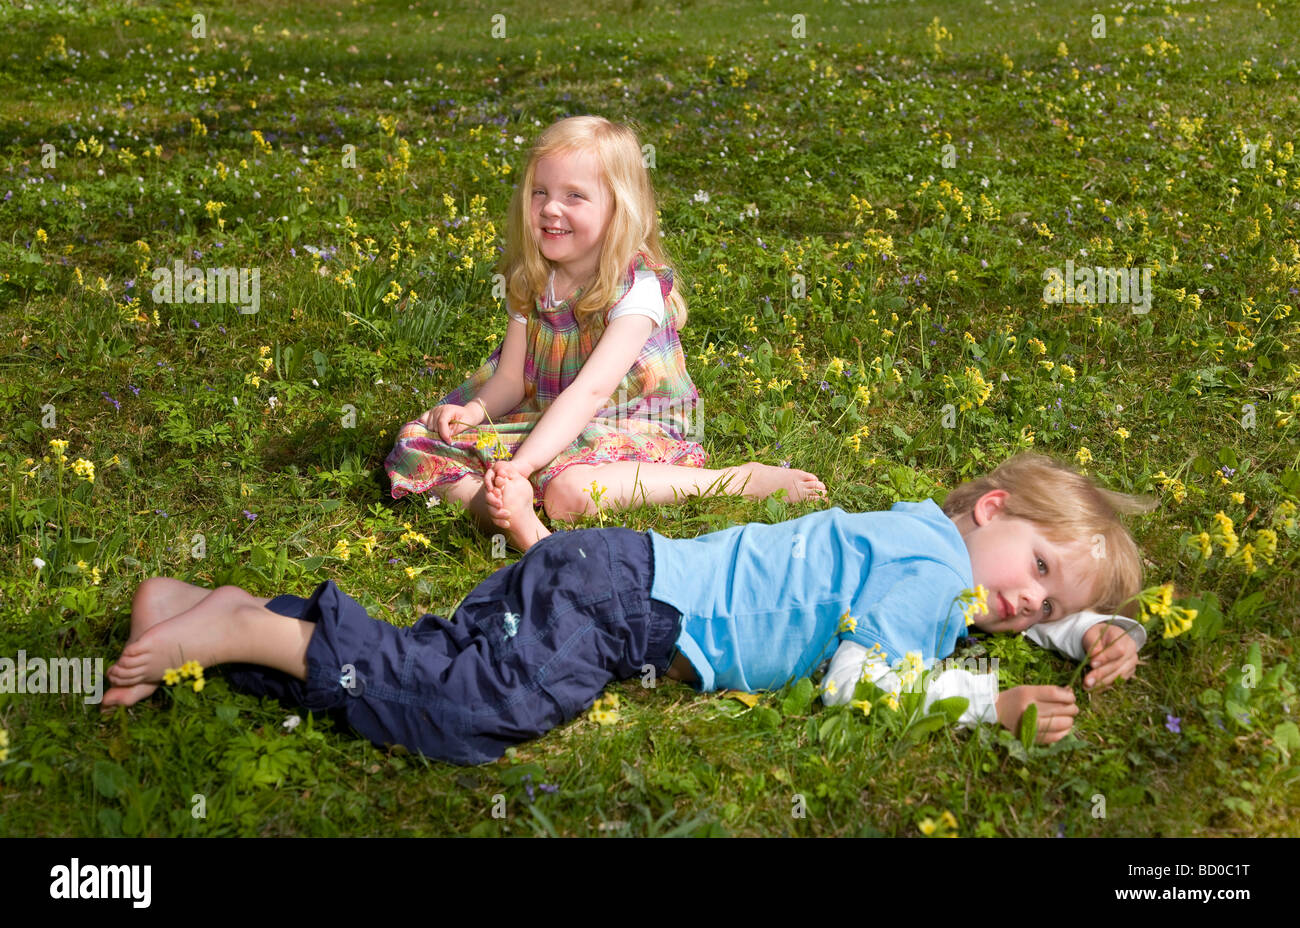 Mädchen und jungen im Grass liegen Stockfoto